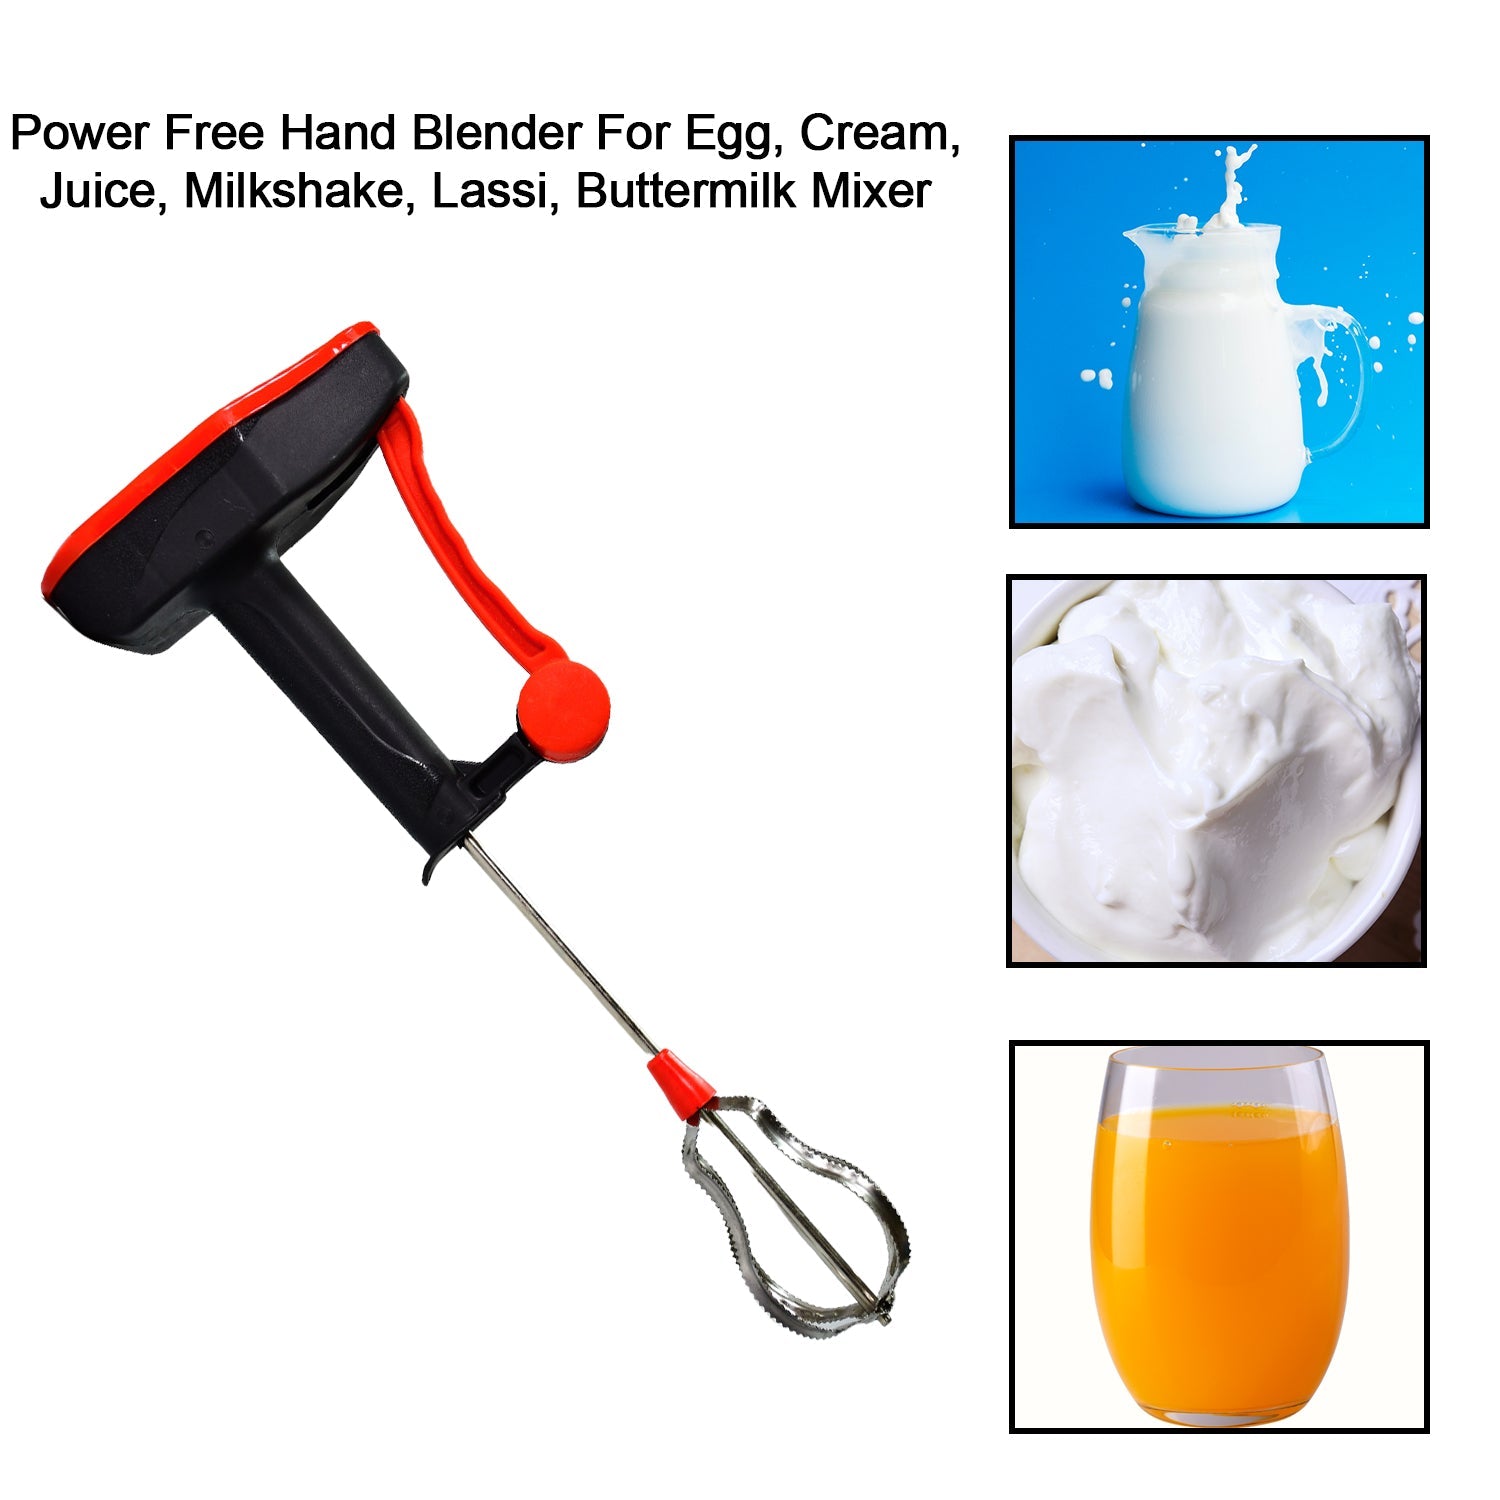 5249 Stainless Steel Power Free Mixer Maker Hand Blender for Cream Beater, Milk Shake, Lassi, Butter Milk etc. DeoDap